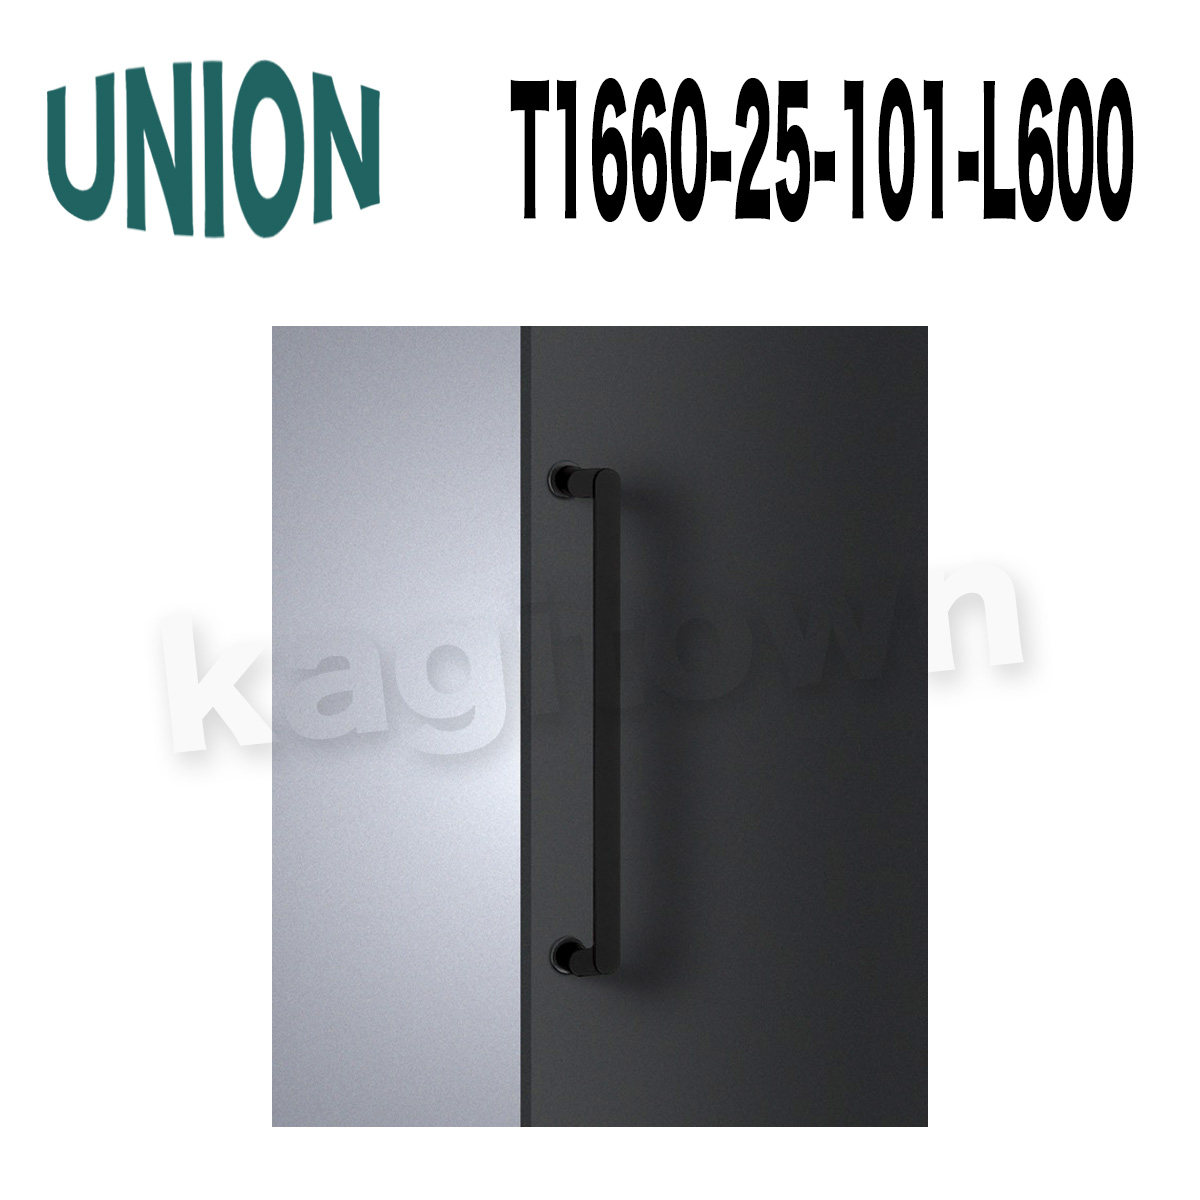 UNION【ユニオン】T1660-25-038-L600[ドアハンドル] 押し棒 1セット